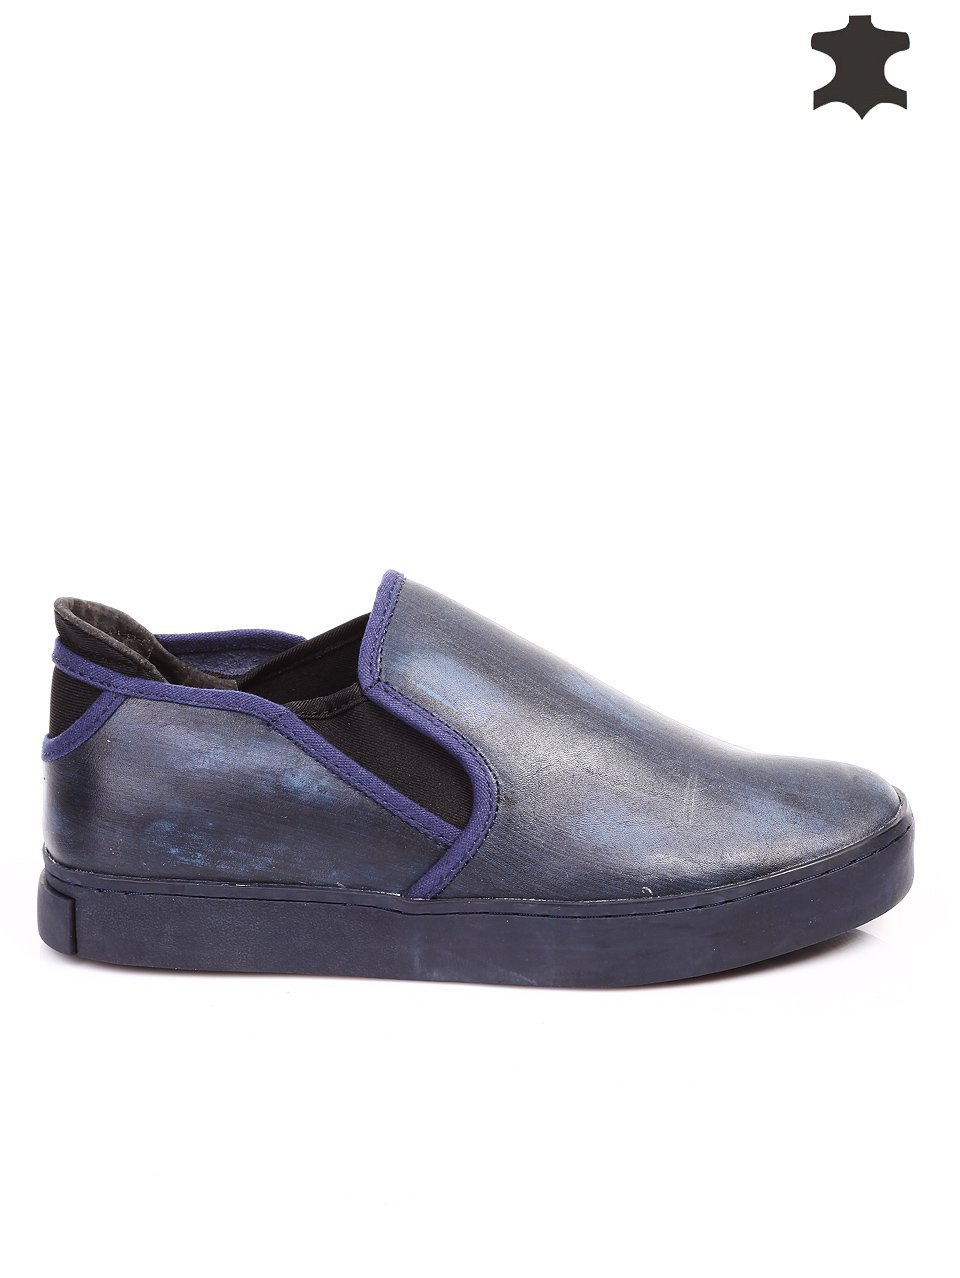 Ежедневни мъжки обувки от естествена кожа в синьо 7T-15729 navy